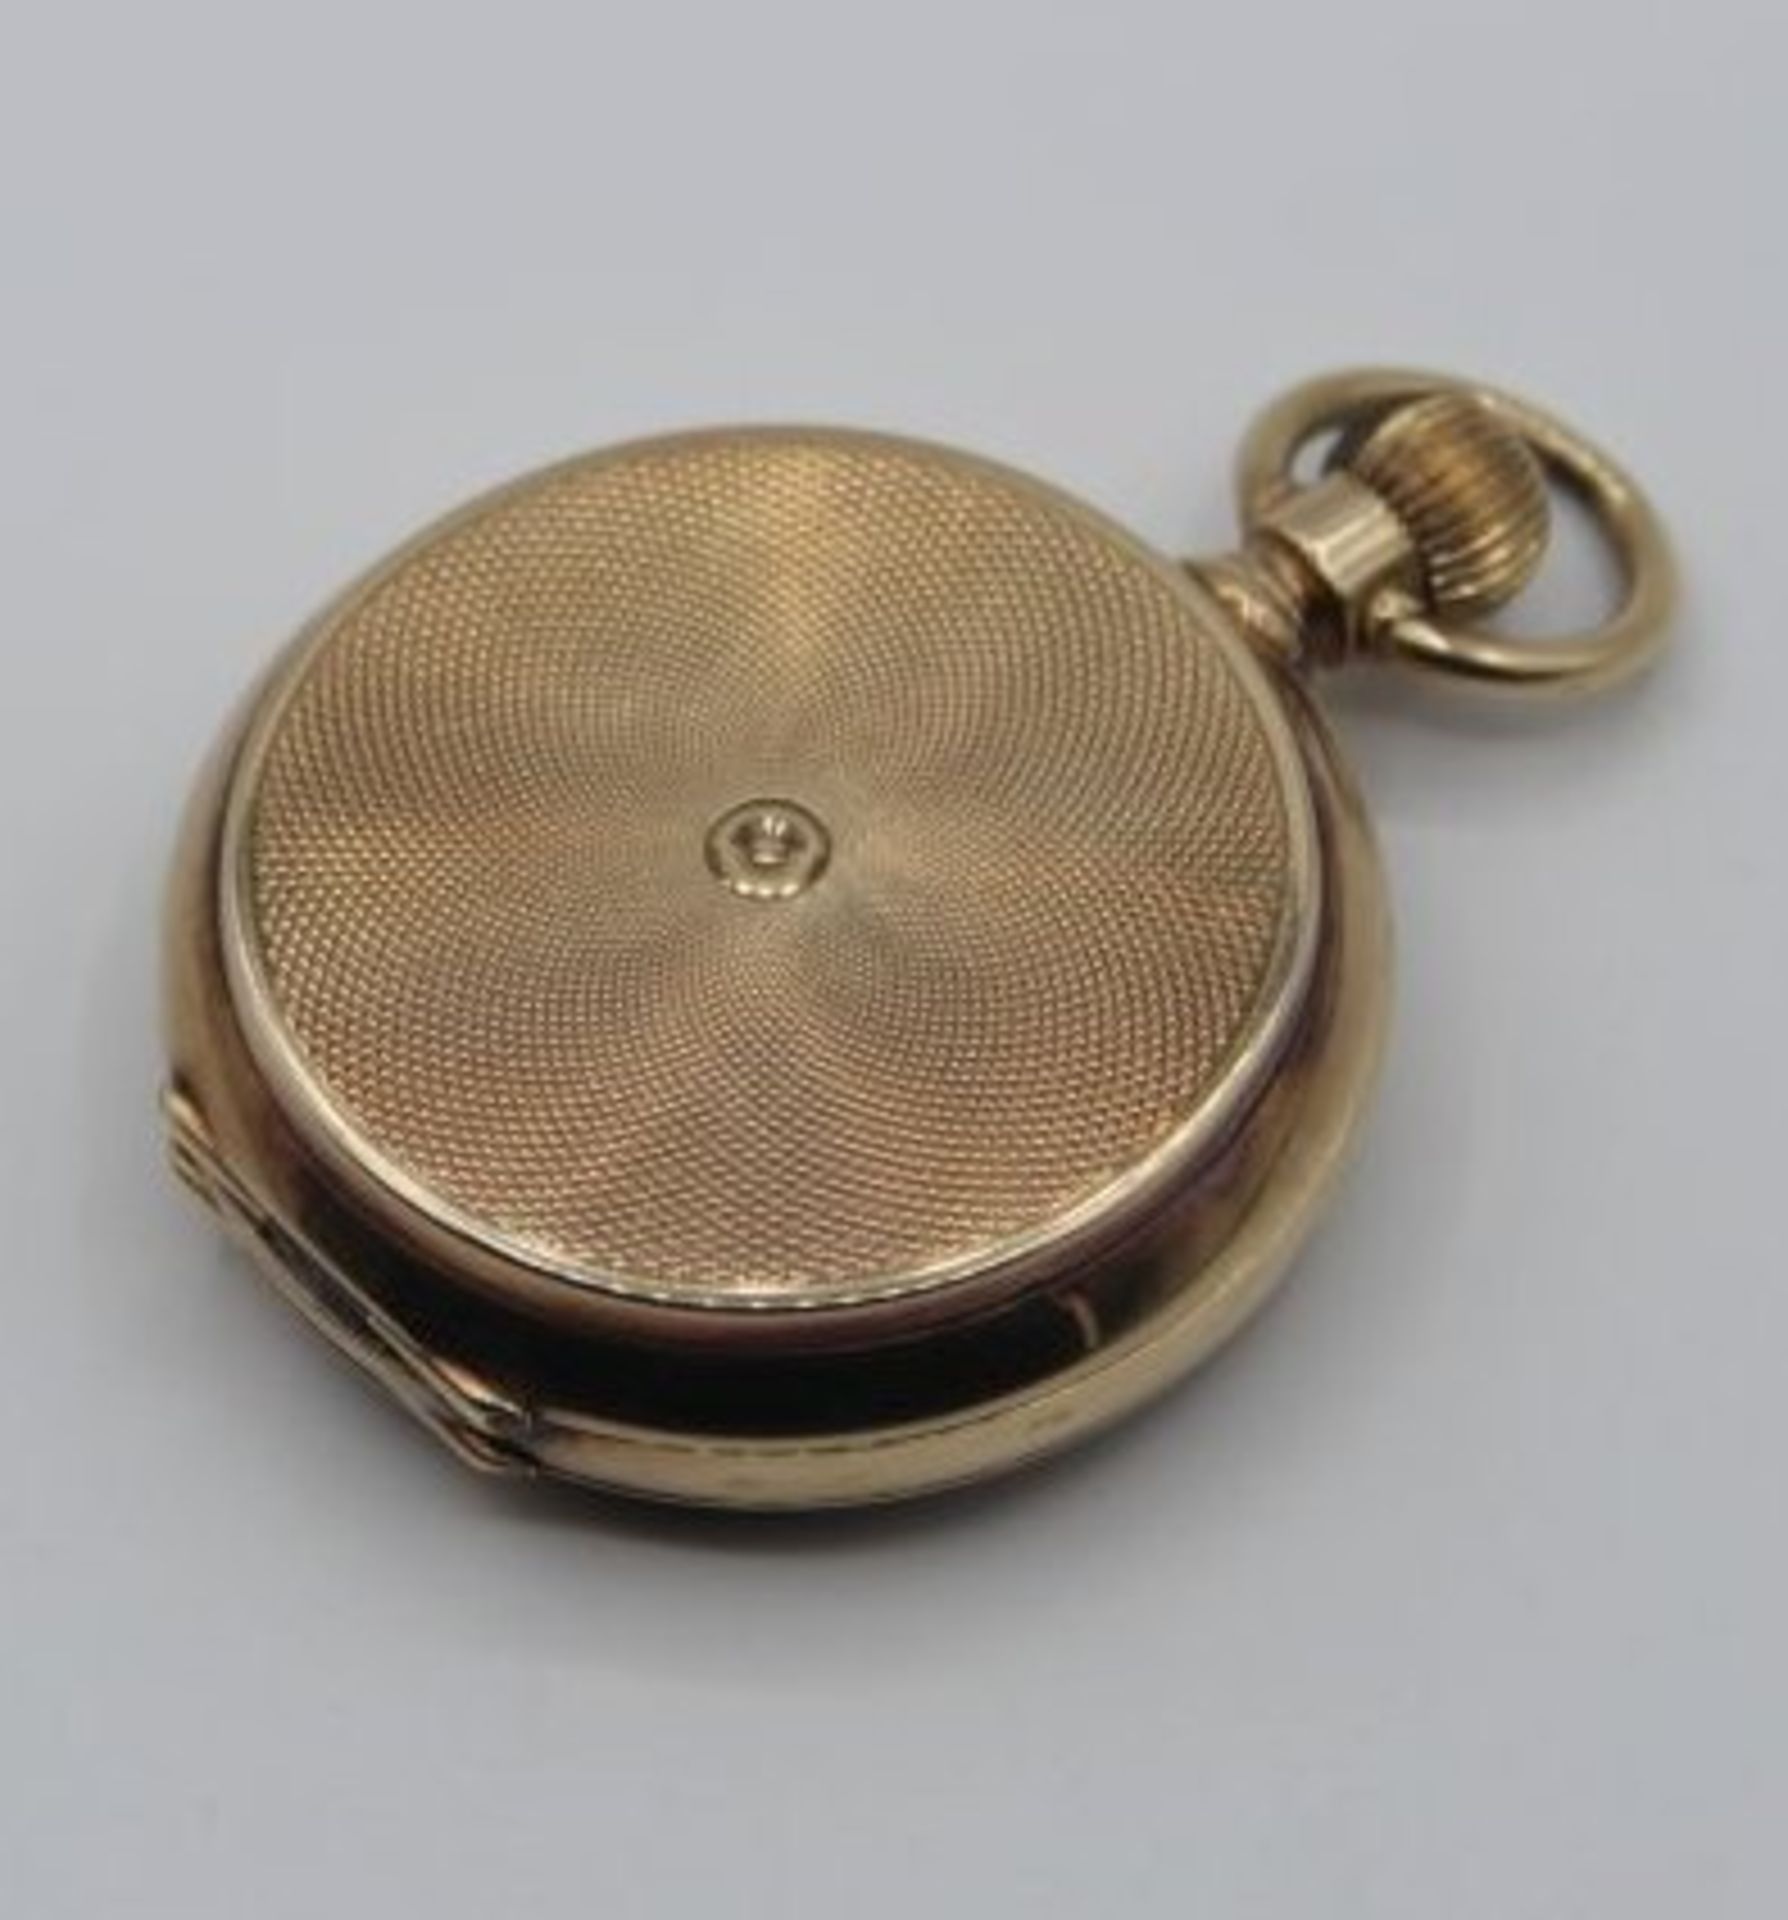 Tascheuhr um 1900, 14 Karat Gold, 2seitig beschaubar, Uhrzeit verso Kalendarium, Glas bei - Bild 5 aus 6